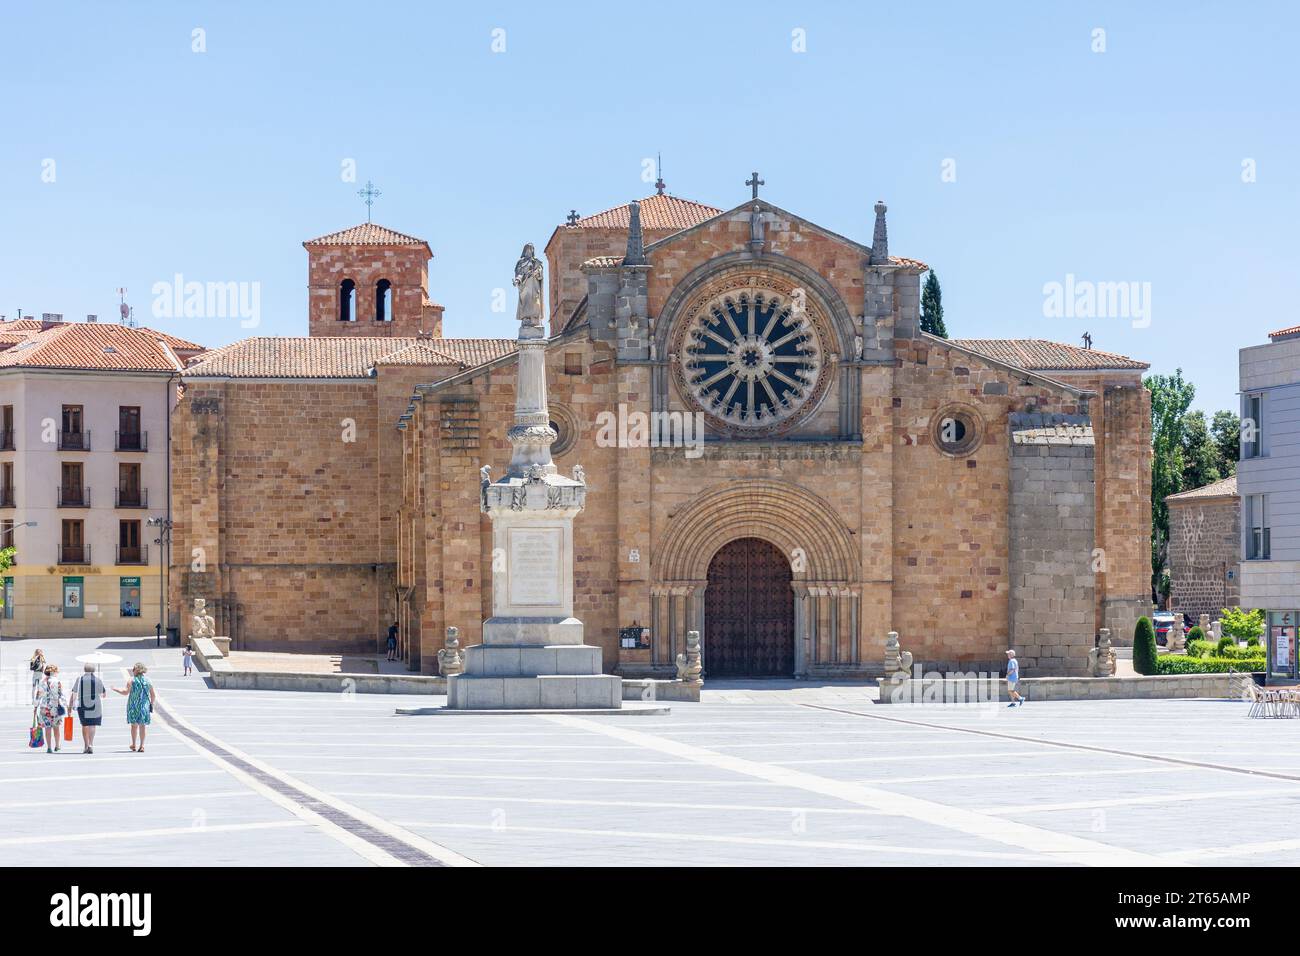 Paroisse de St. Pierre l'Apôtre (Iglesia de San Pedro Apóstol), Plaza de Santa Teresa de Jesus, Ávila, Castille-et-León, Royaume d'Espagne Banque D'Images